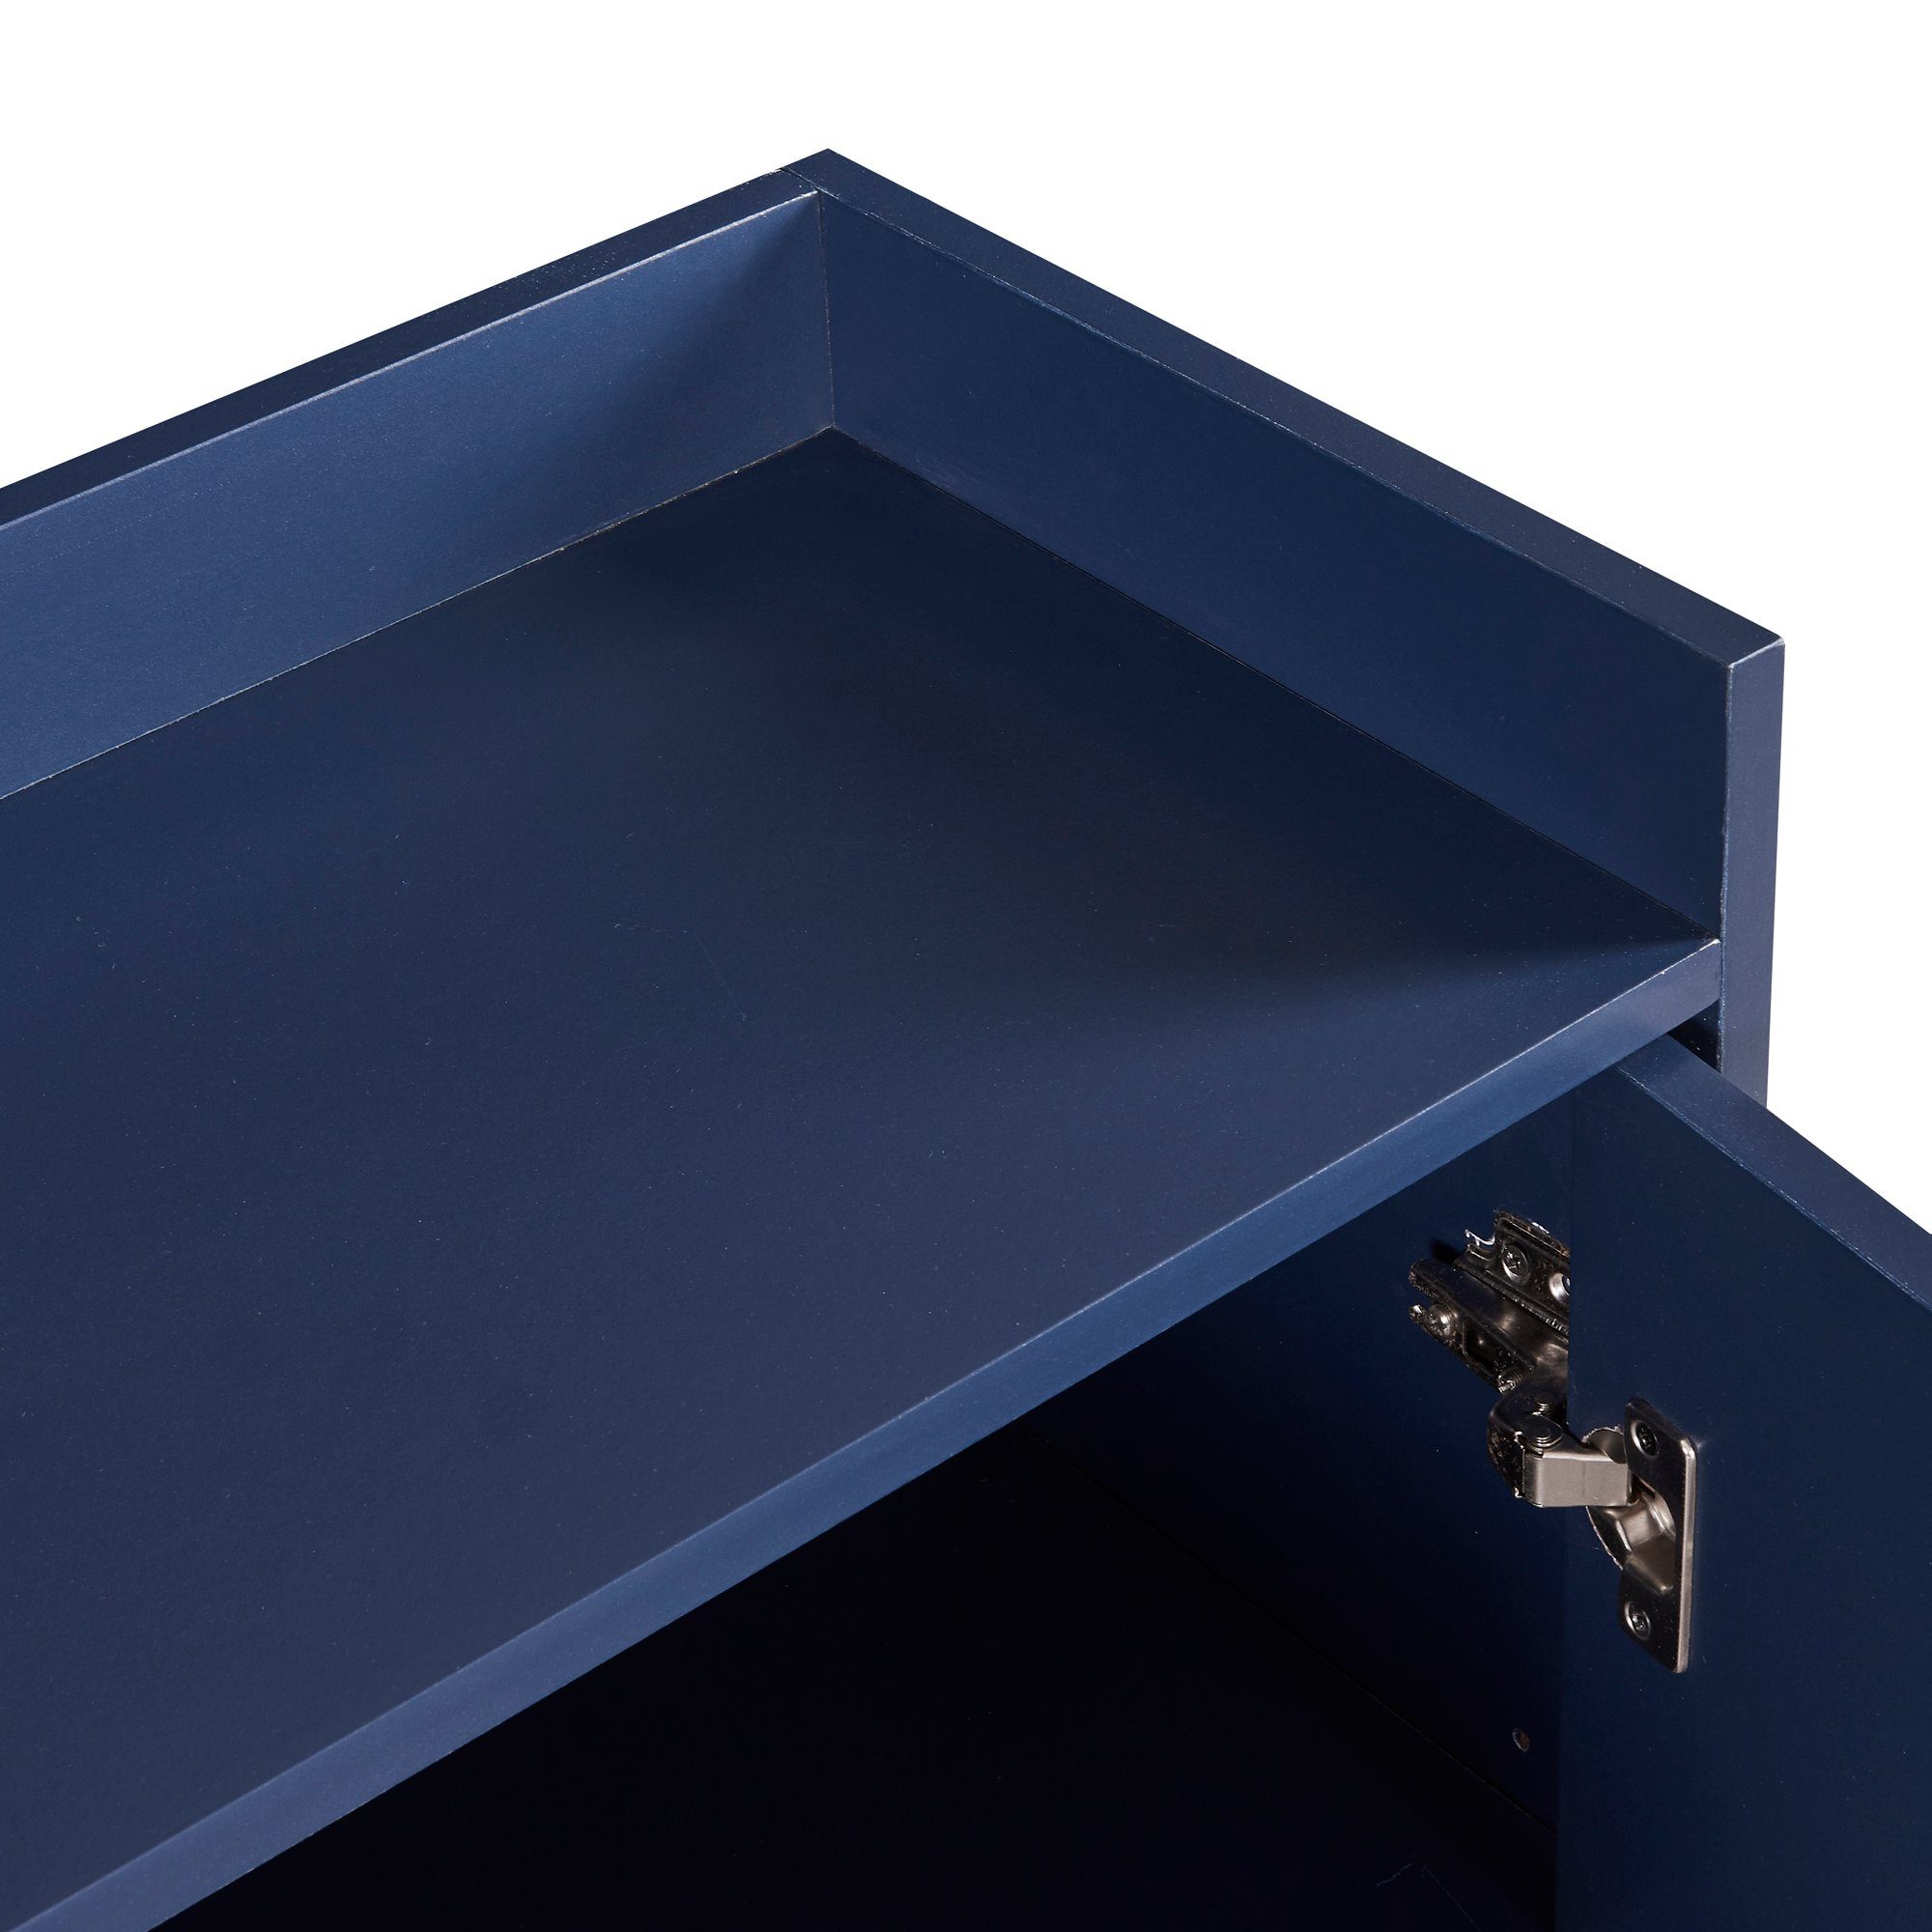 OKWISH Sideboard Küchenschrank Küche) im Modernes (griffloser minimalistischen Wohnzimmer, Anrichte, Esszimmer, Stil für Buffetschrank blau 4-türiger